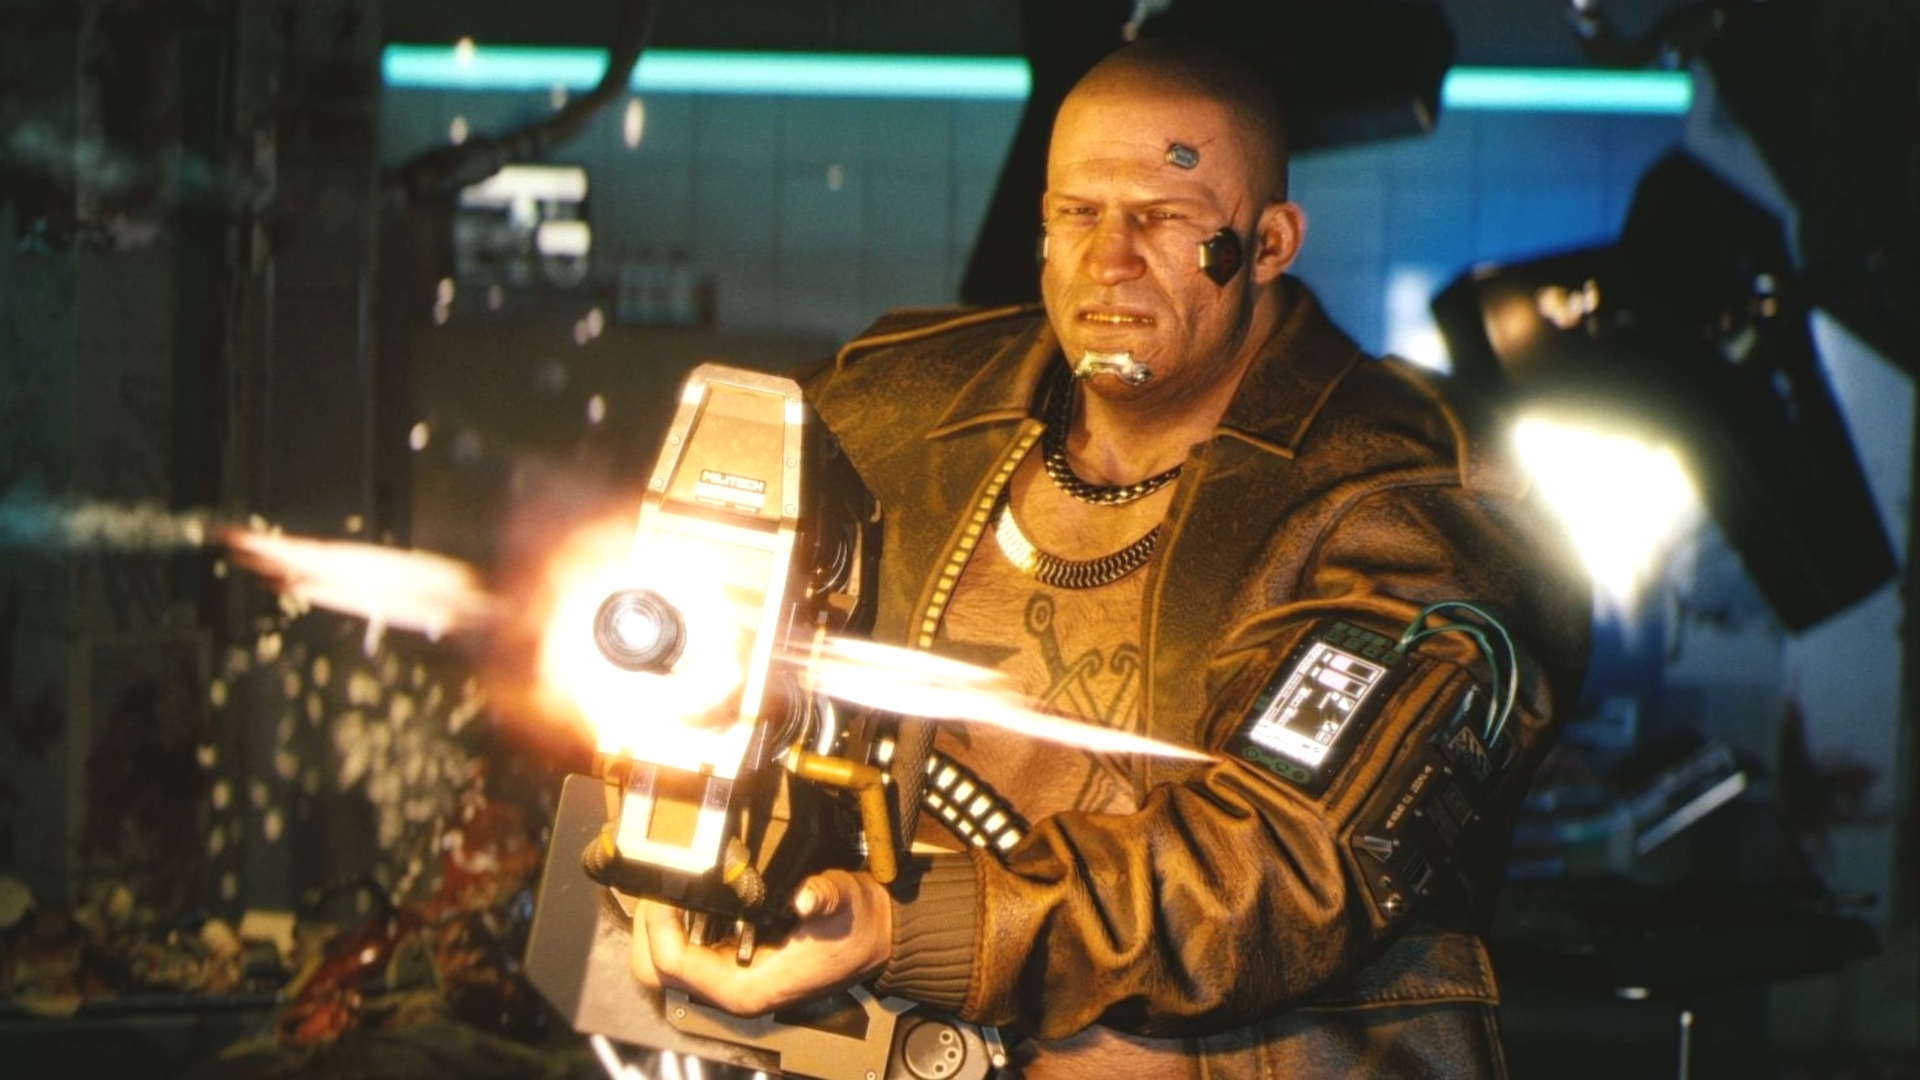 #Cyberpunk 2077: V lernt dank neuer Mod eine Kampf-Technik von Geralt